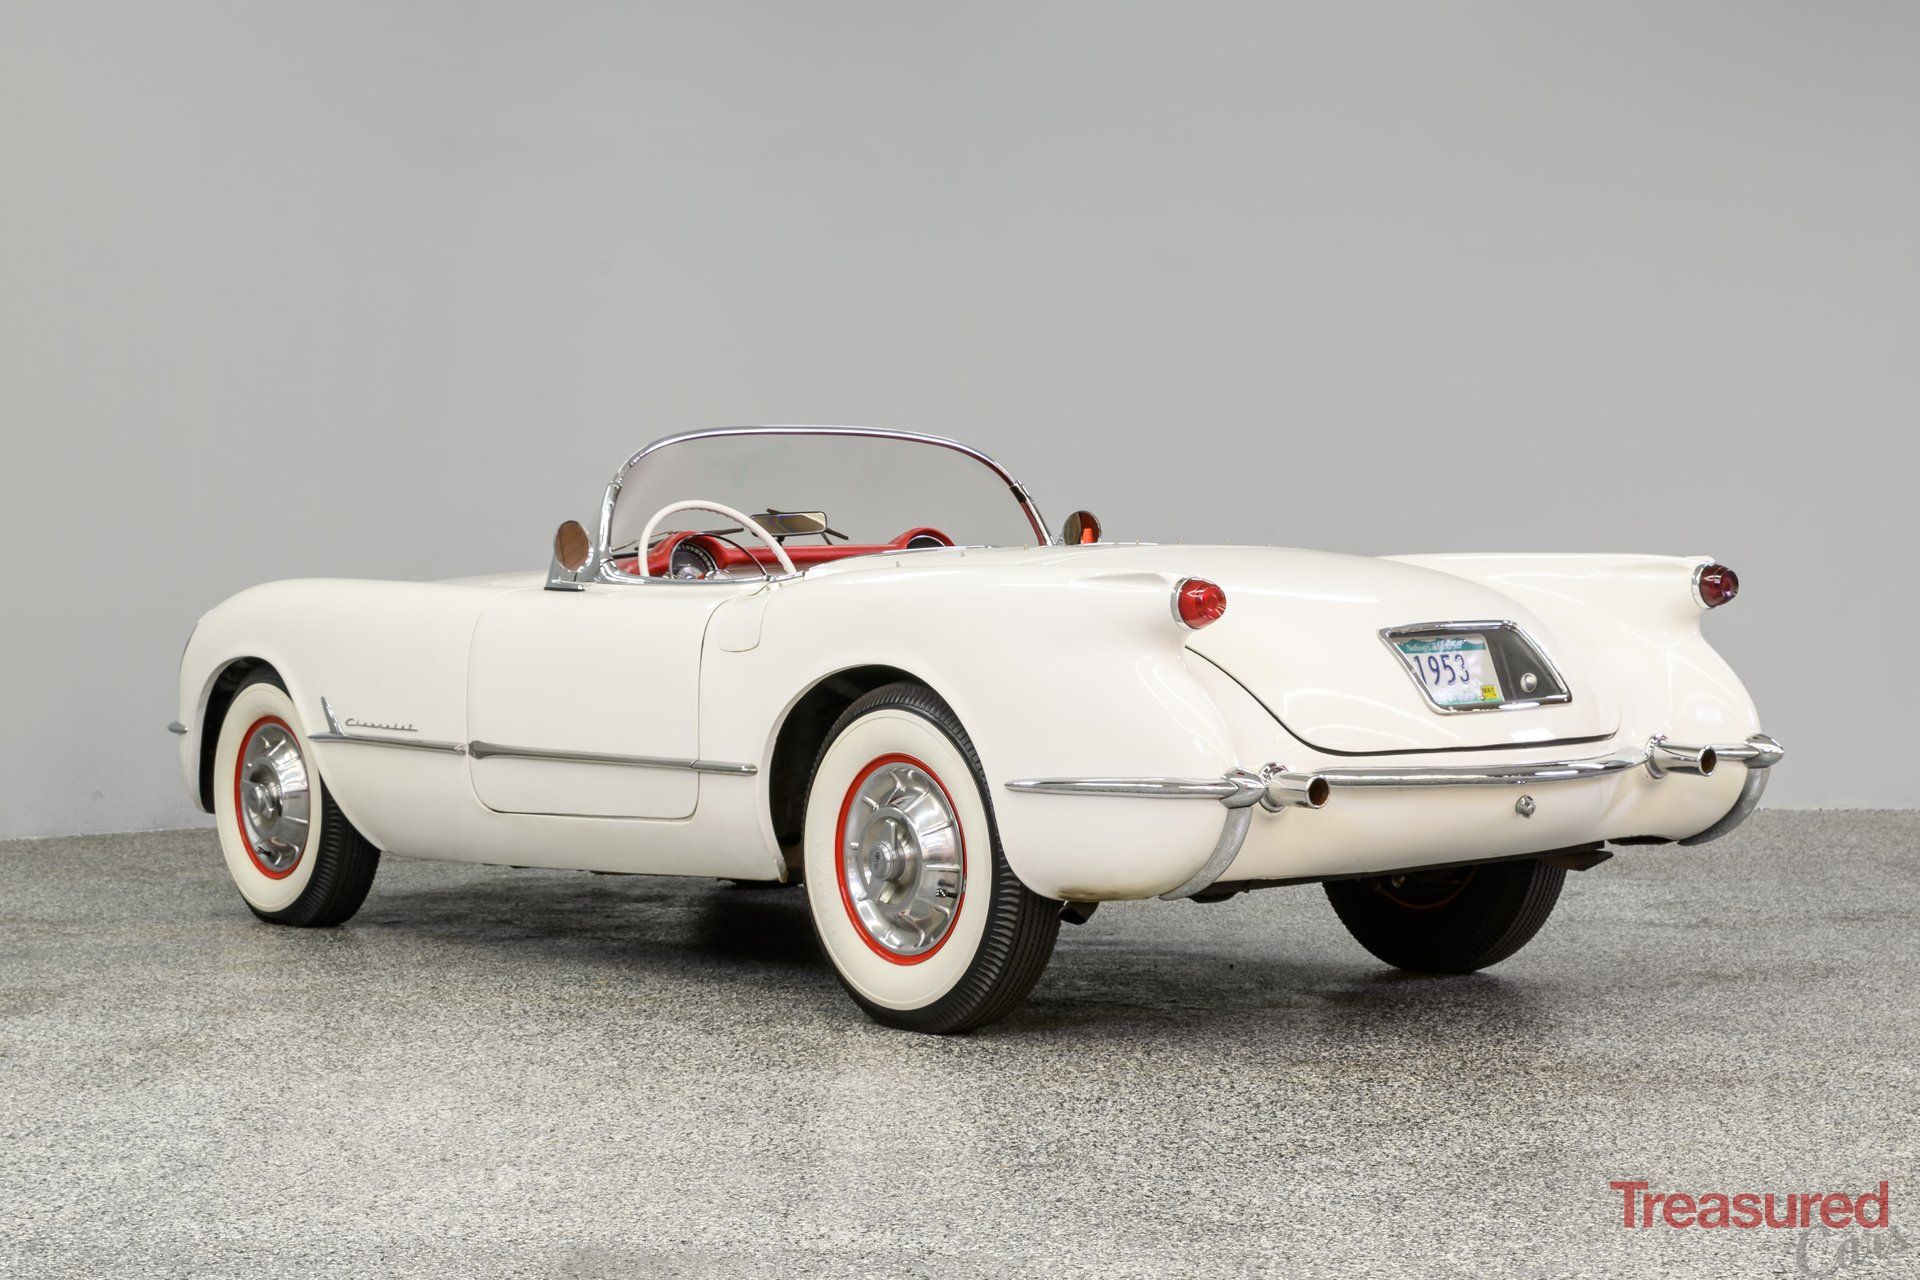 1953 Chevrolet Corvette Replica Classic Cars For Sale Treasured Cars